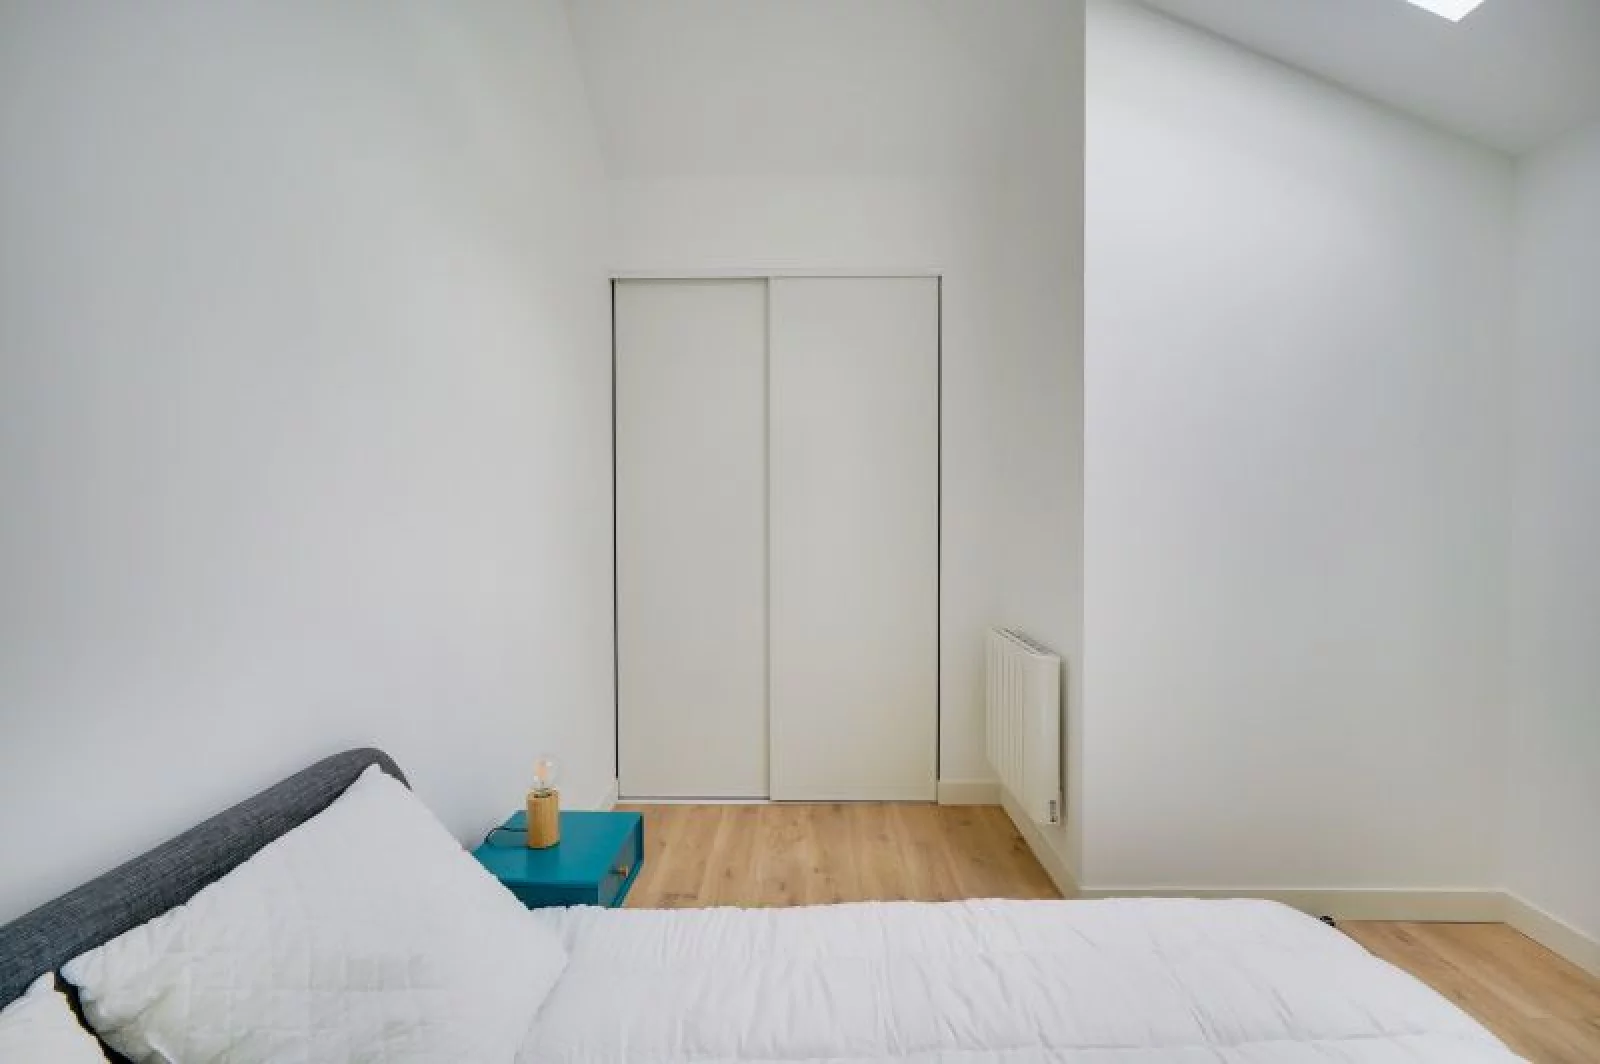 Location appartement meublé 50m² (Bordeaux centre - Ornano)